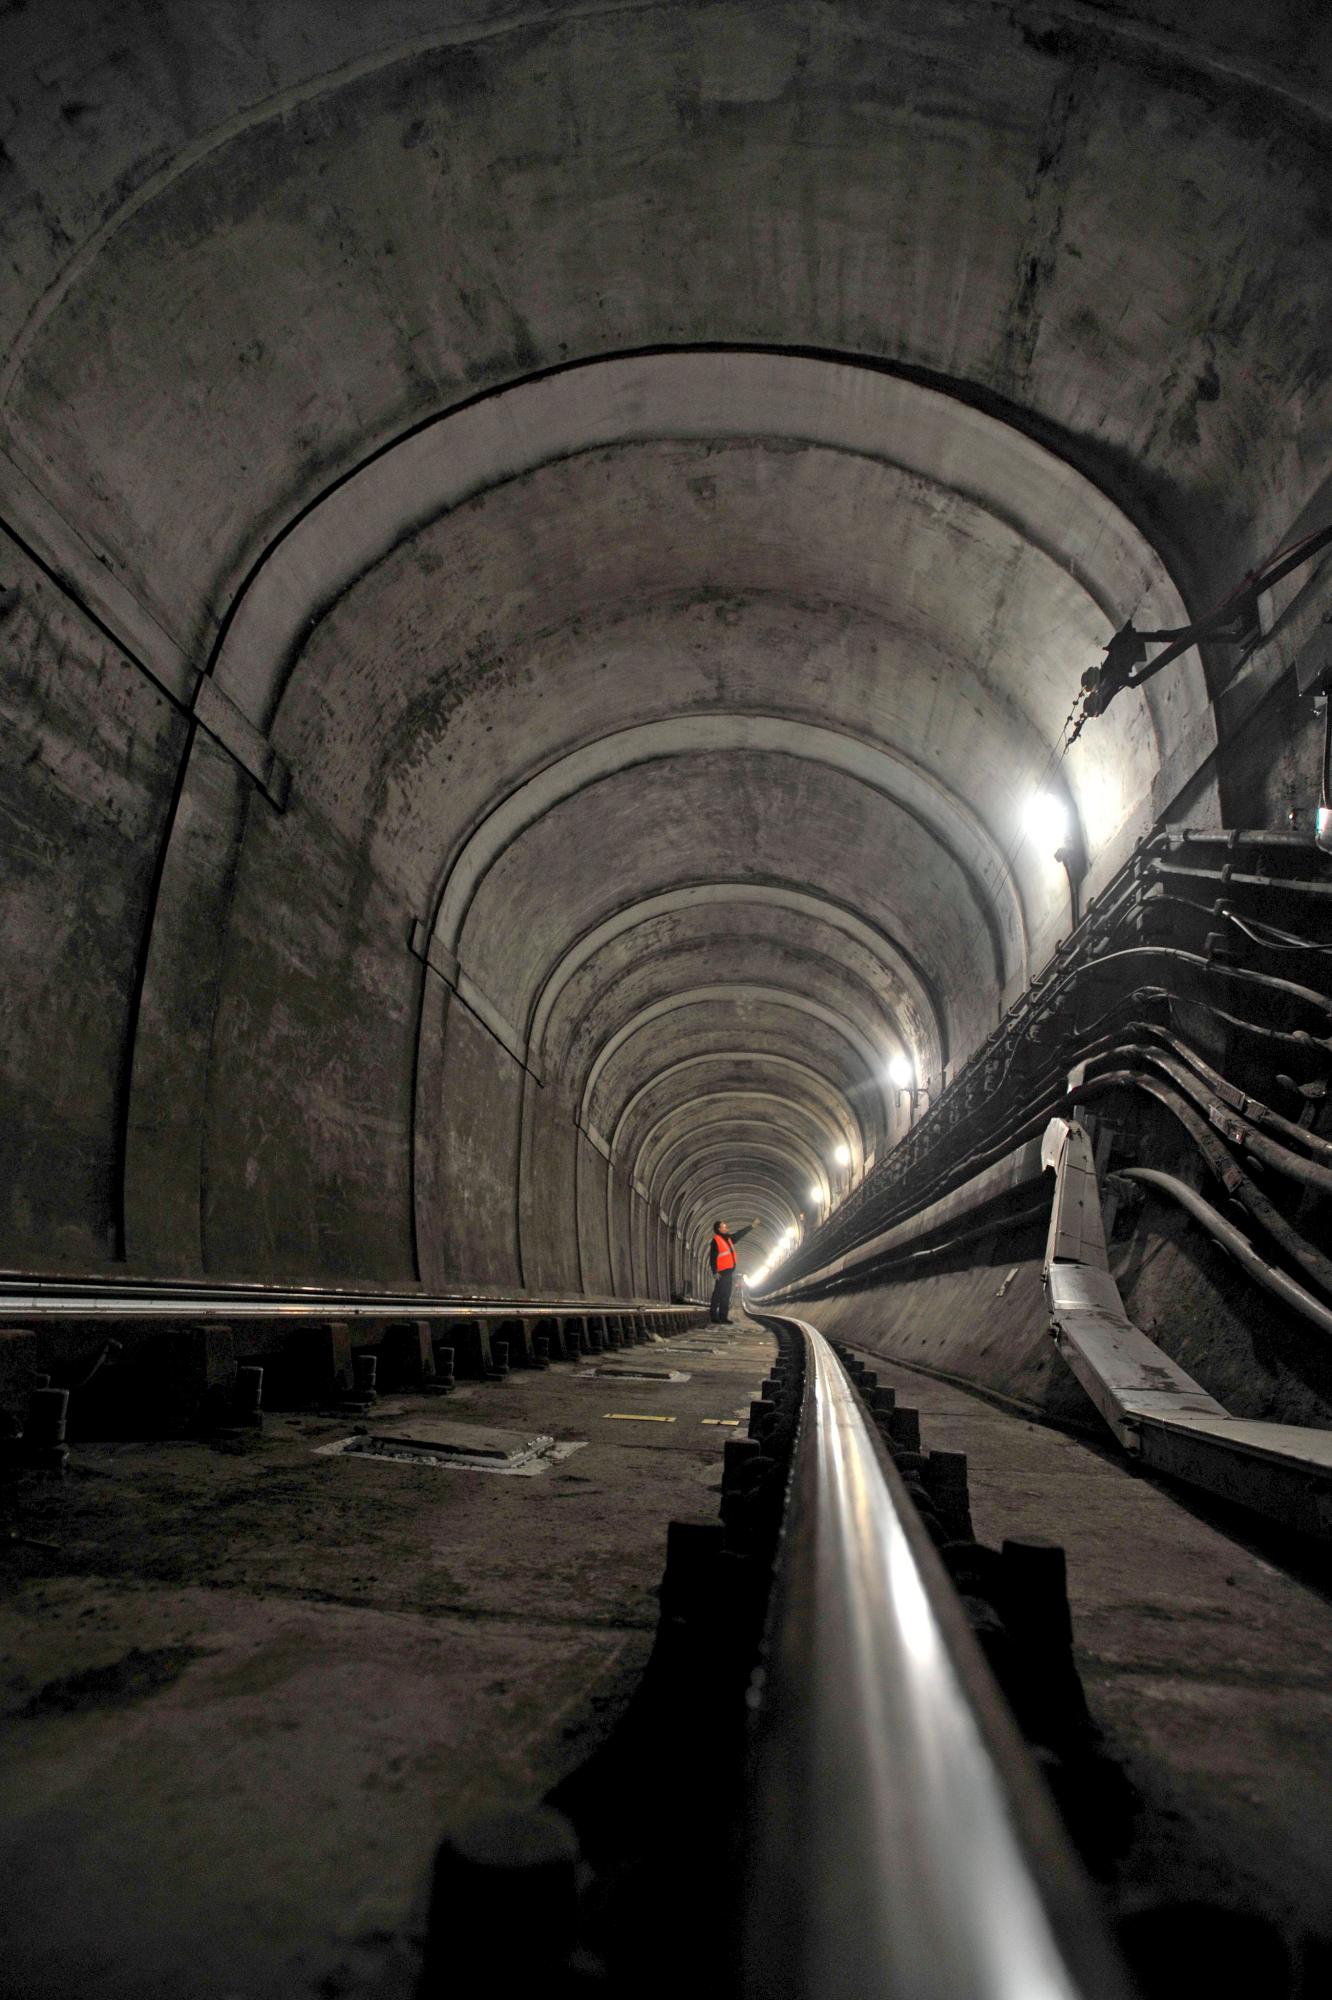 LONDRES (REINO UNIDO) 12/03/2010.- Un empleado de las instalaciones visita una sección del túnel bajo el río Támesis, construido durante la época victoriana, en Rotherhithe, en el sureste de Londres (Reino Unido) hoy, viernes 12 de marzo de 2010. El túnel, de 396 metros de largo inaugurado en 1852 y construido por el ingeniero británico Isambard Kingdom Brunel, no sólo se utilizo como túnel del ferrocarril sino que al principio también albergó varios eventos culturales e incluso bailes. 